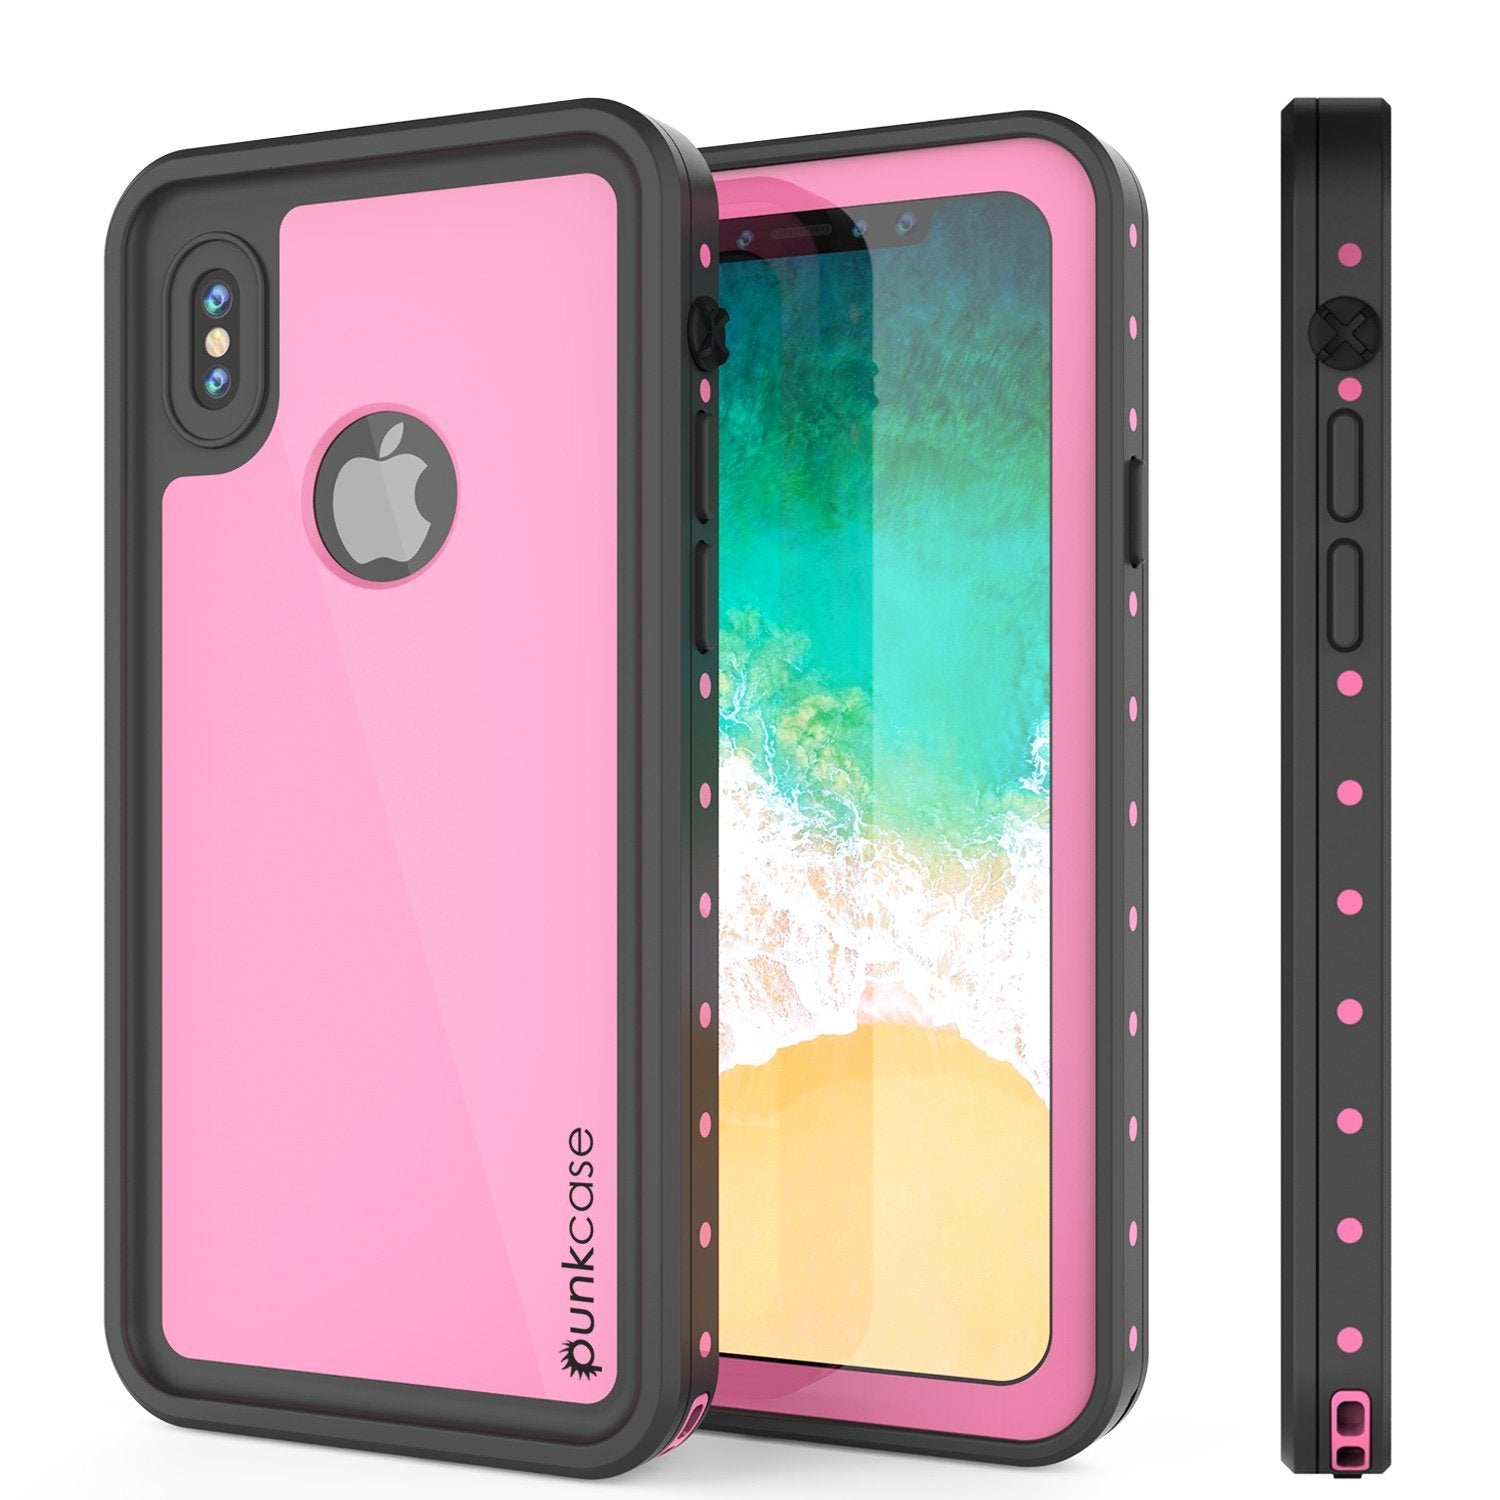 iPhone XS Max Waterproof IP68 Case, Punkcase [Pink] [StudStar Series] [Slim Fit] [Dirtproof]